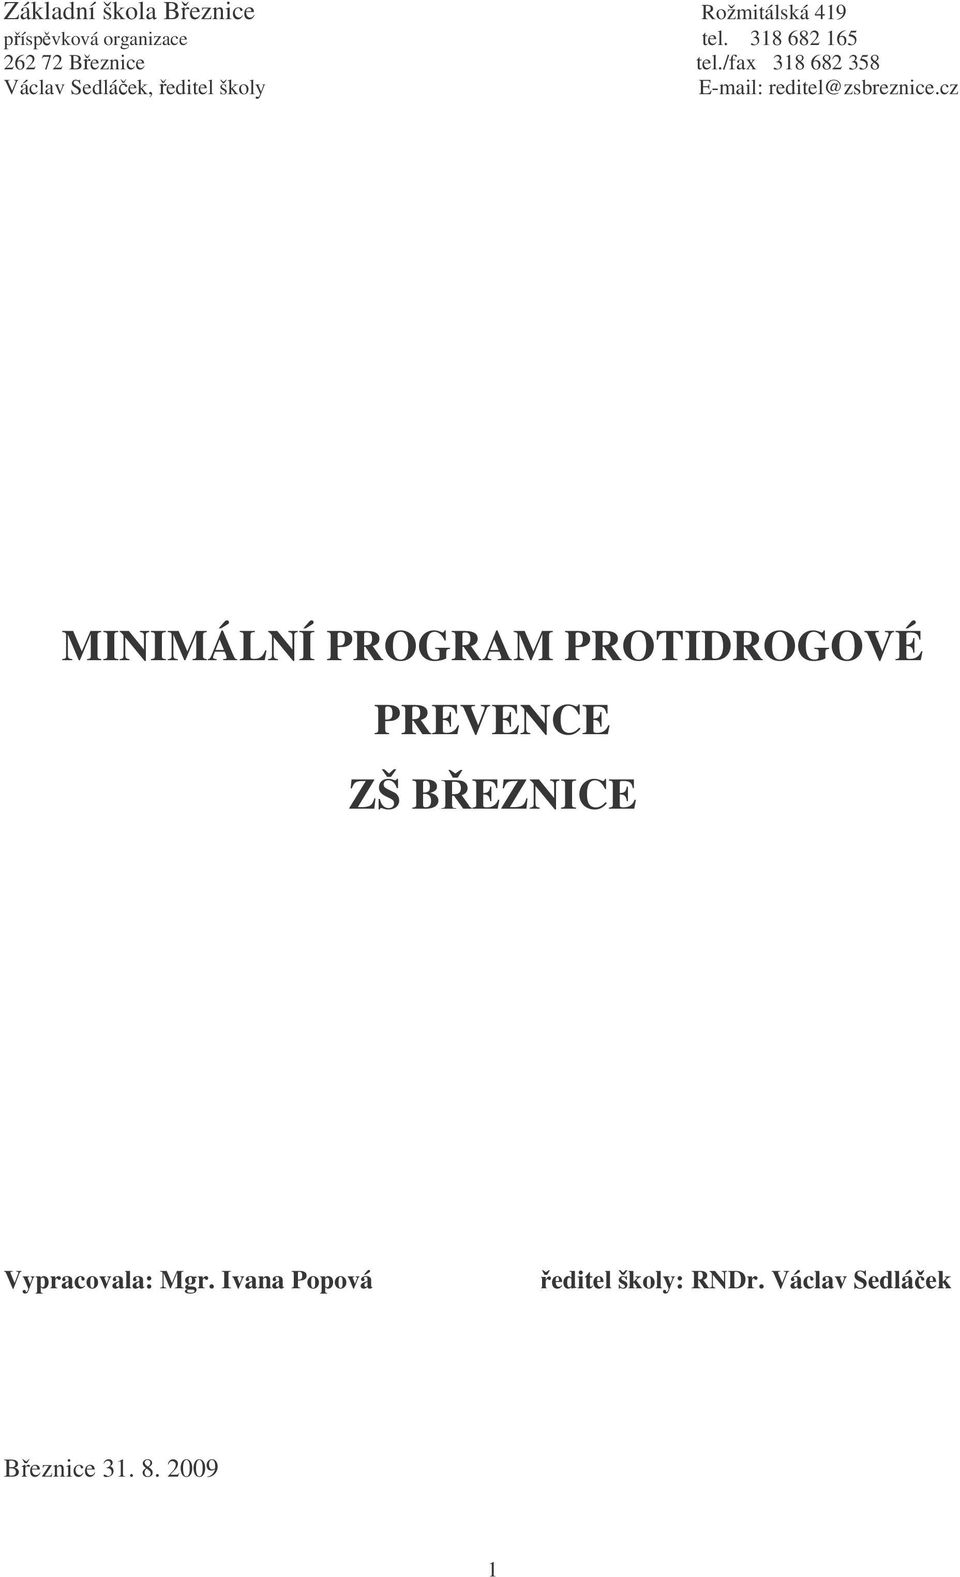 /fax 318 682 358 Václav Sedláek, editel školy E-mail: reditel@zsbreznice.